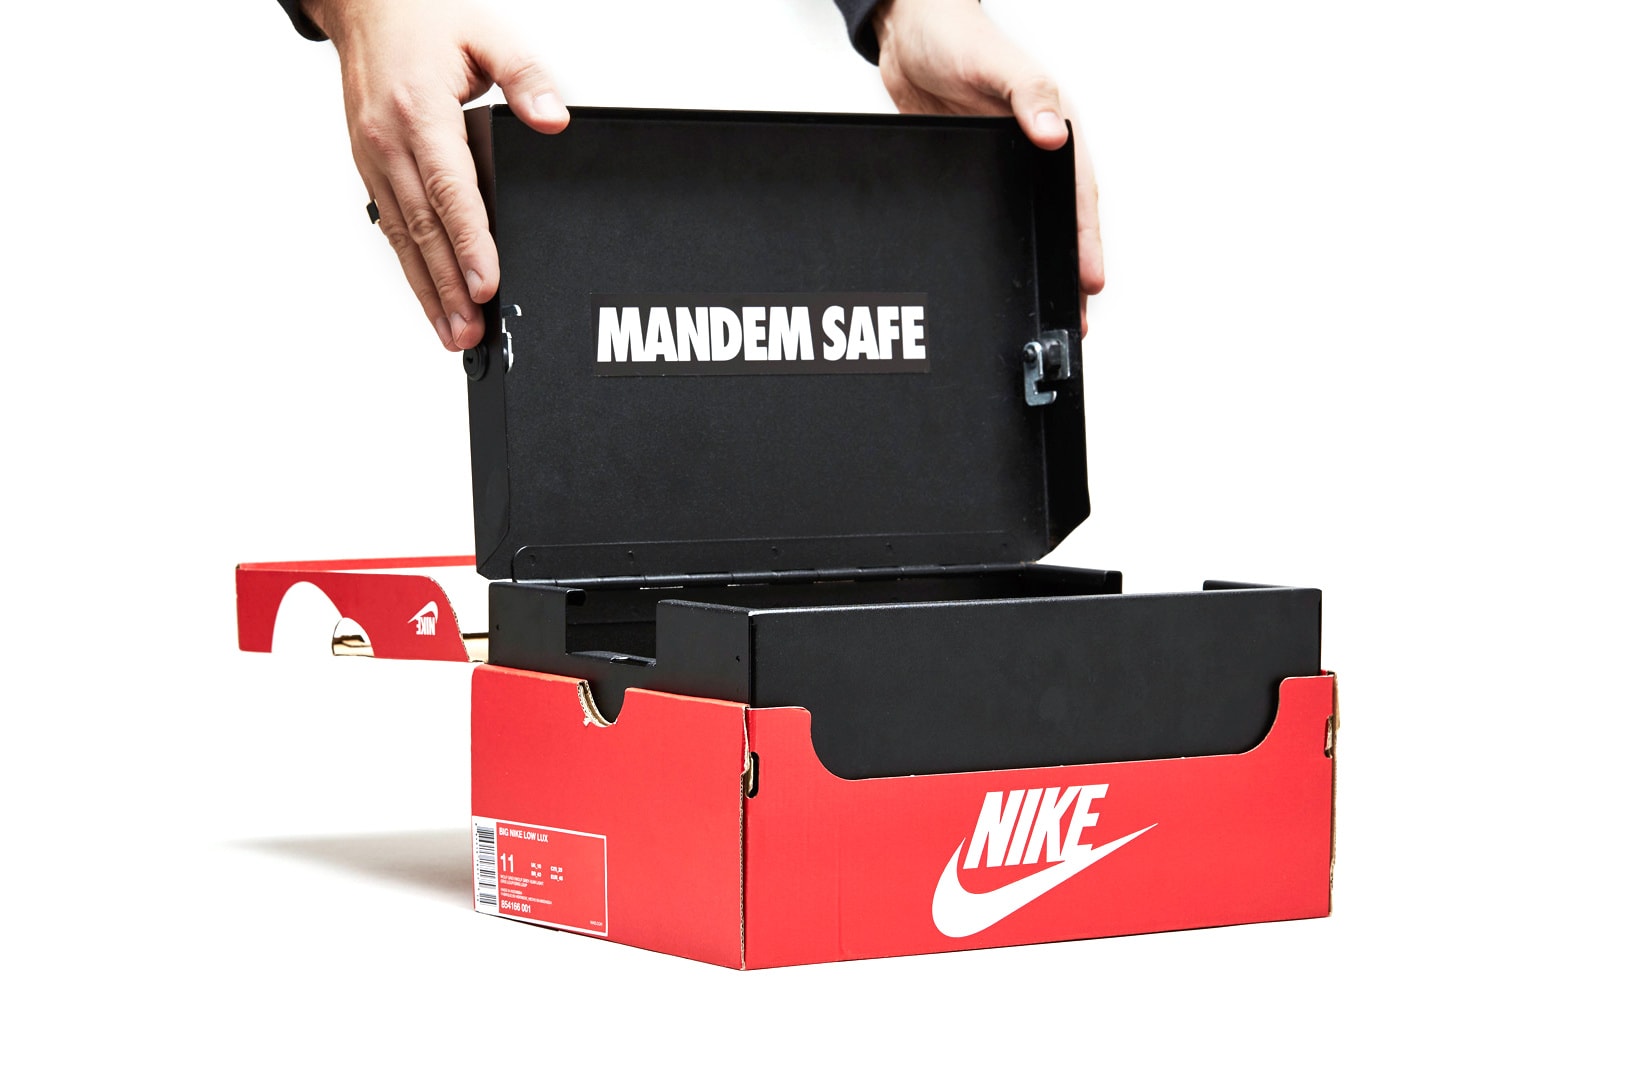 the mandem safe shoe box launch